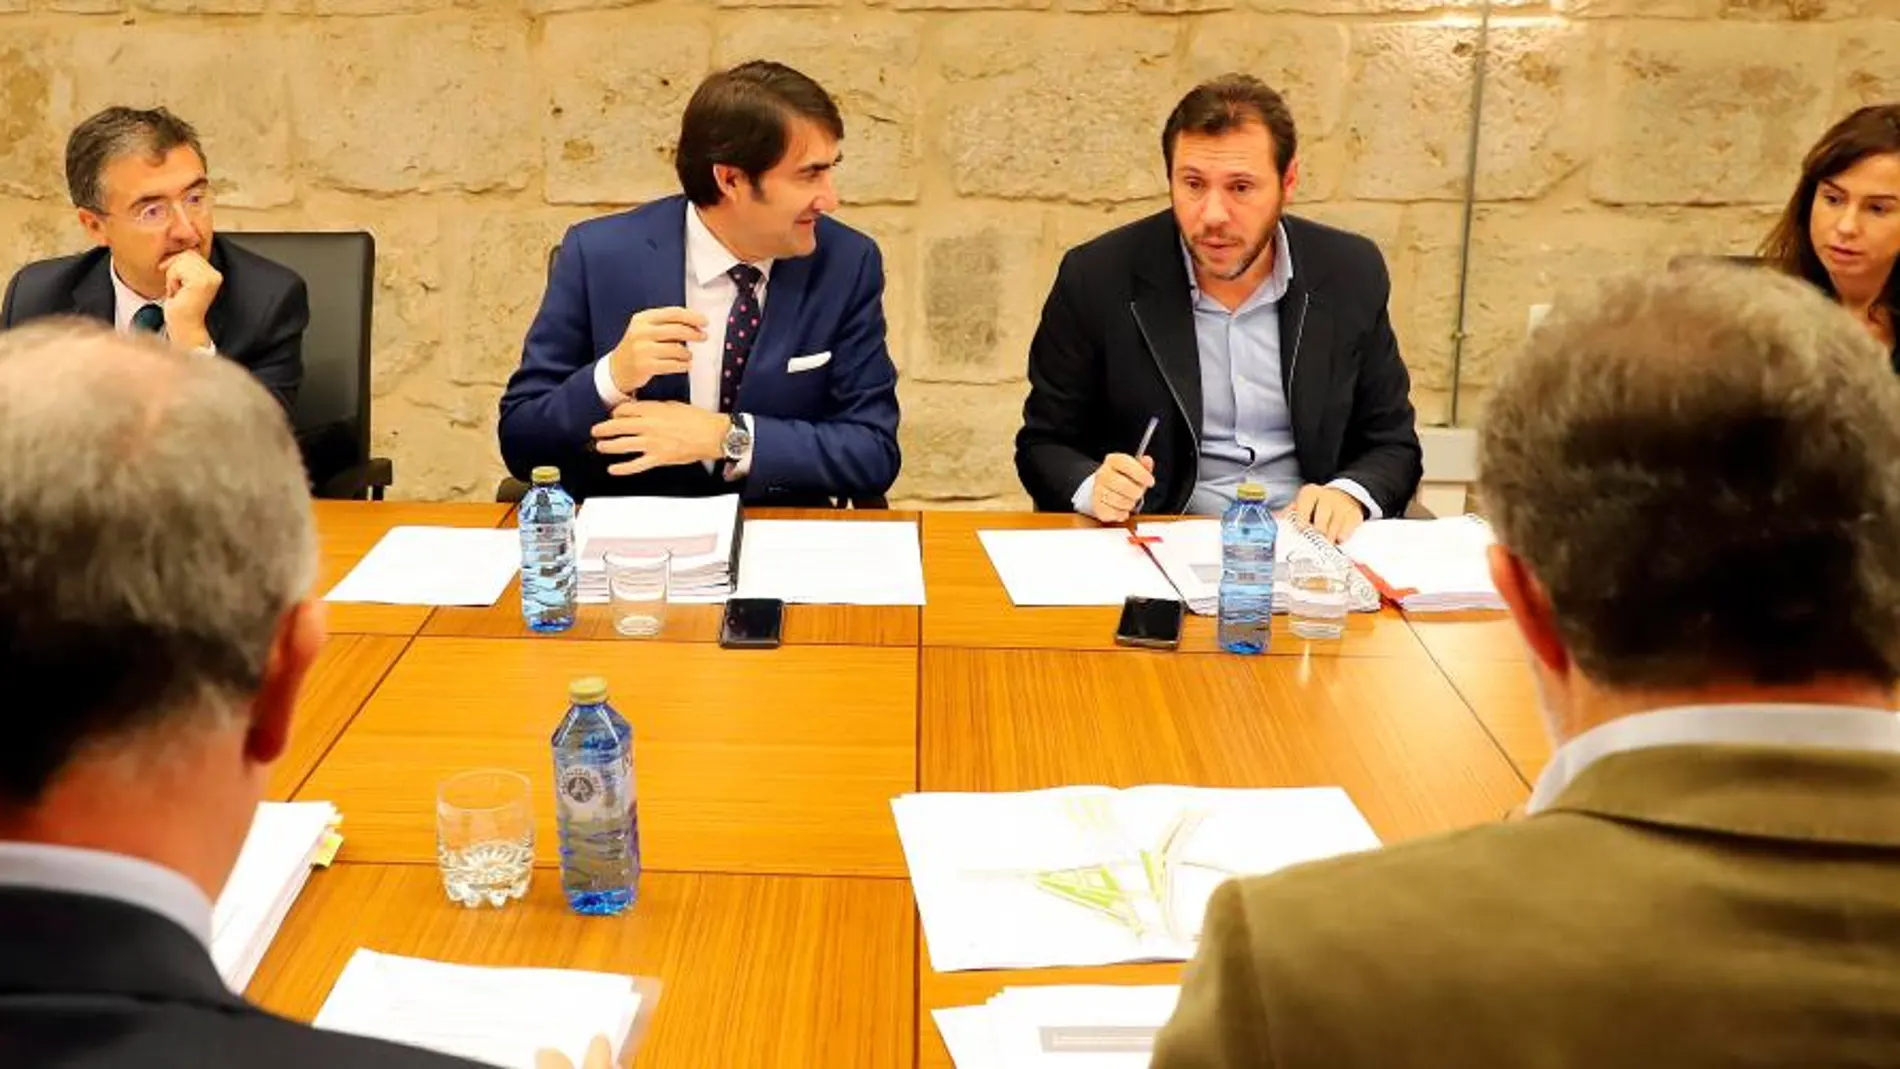 Juan Carlos Suárez-Quiñones, Óscar Puente e Isabel Pardo de Vera participan en el Consejo de Administración de la Sociedad Valladolid Alta Velocidad